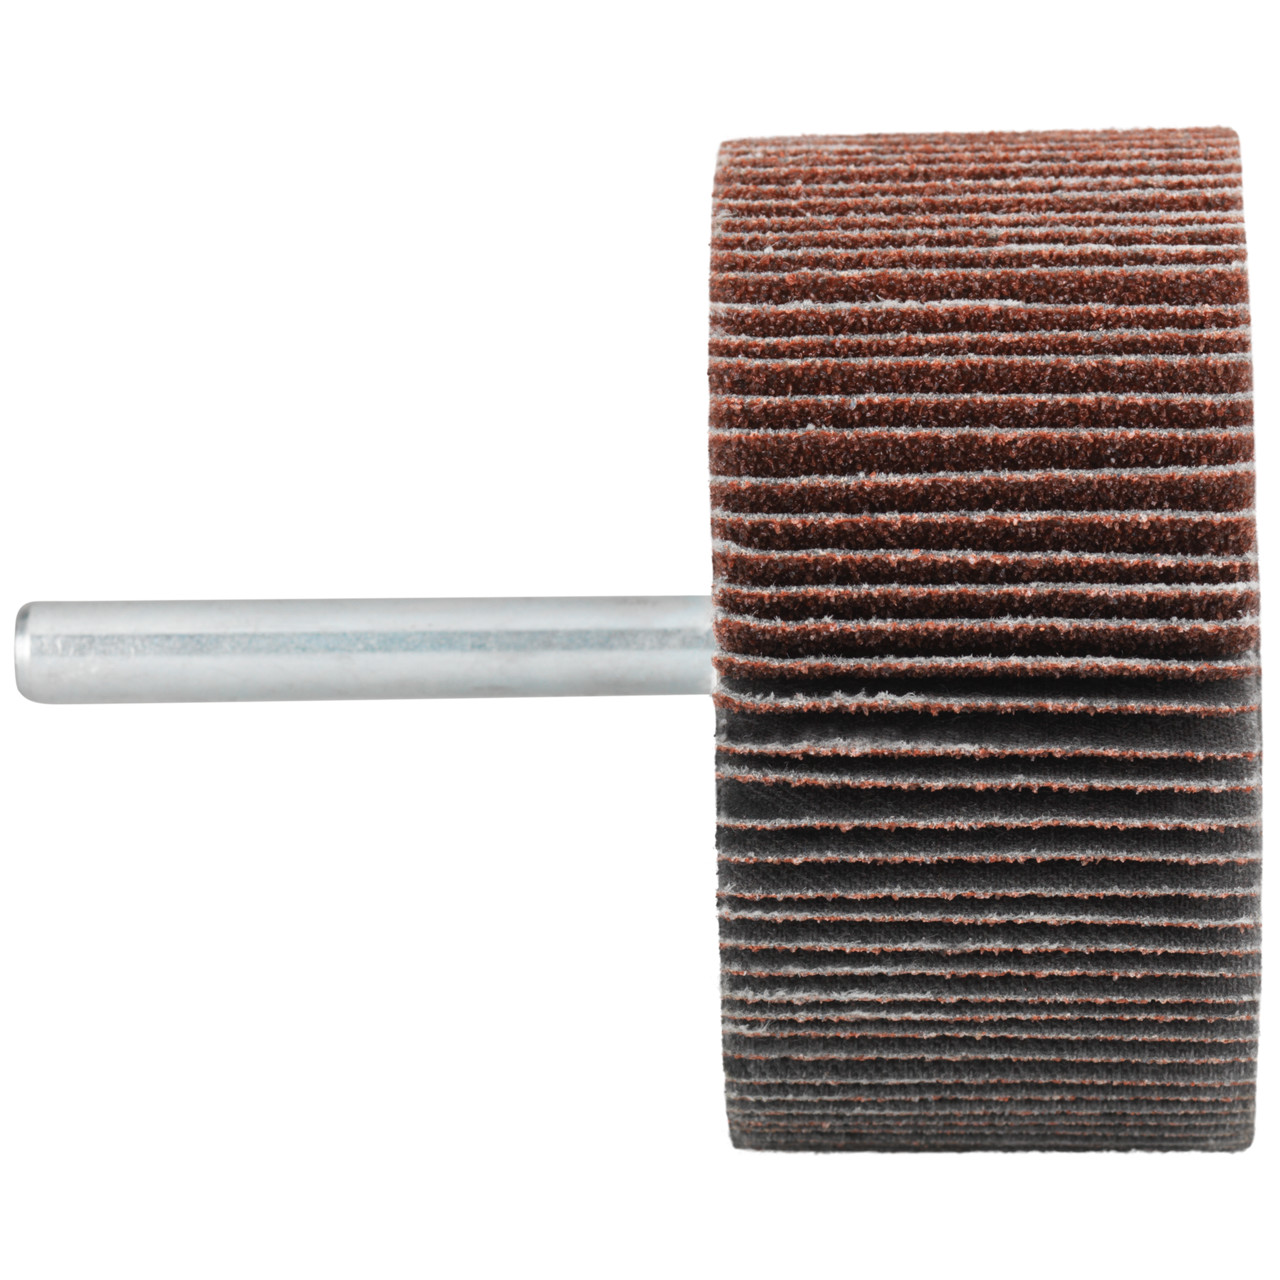 Tyrolit A-P01 C X Pennen DxD 50x20 Voor staal, roestvast staal en non-ferrometalen, P320, vorm: 52LA, Art. 816939